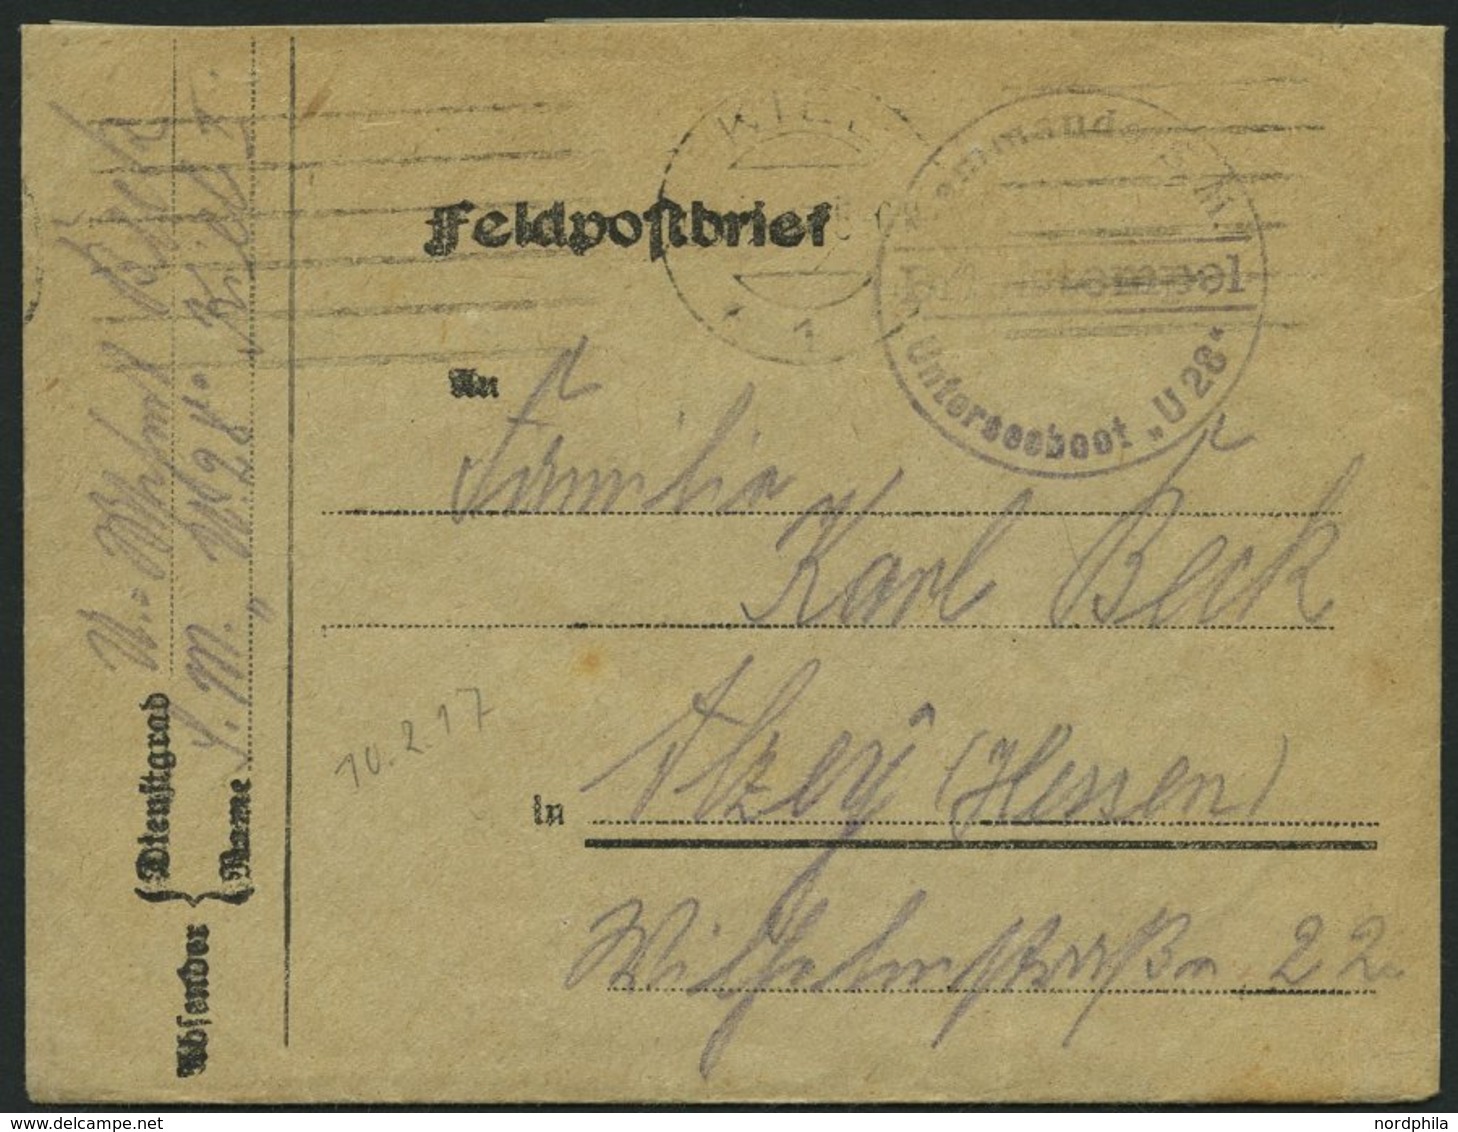 MSP VON 1914 - 1918 (II. Unterseeboots-Halbflottille), 10.2.1917, Violetter Briefstempel, Feldpostbrief Von Bord Des U-B - Marittimi